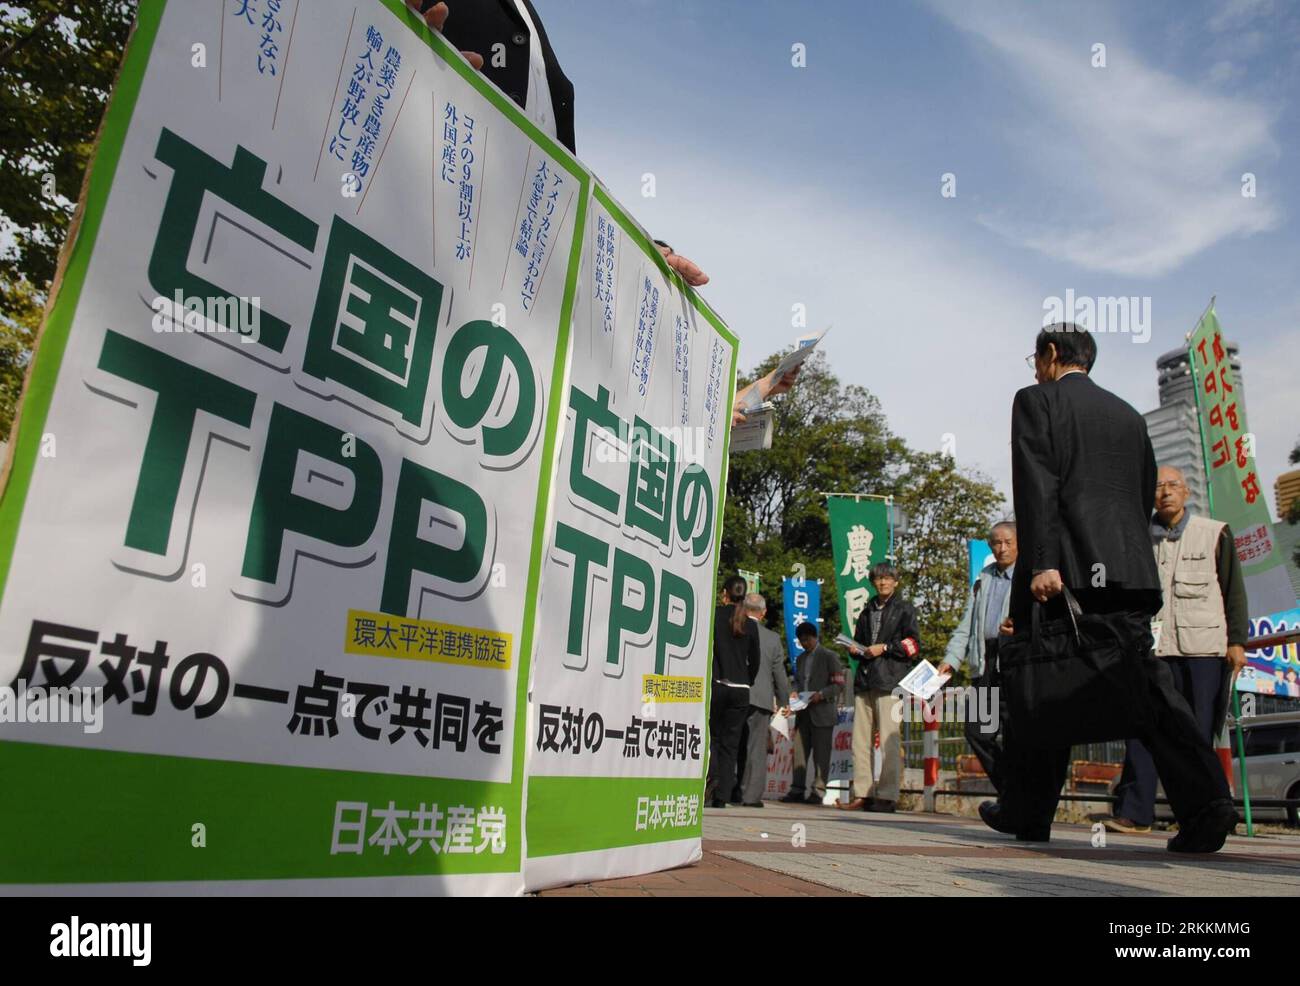 Bildnummer: 56260338 Datum: 08.11.2011 Copyright: imago/Xinhua (111108) -- TOKYO, 8 novembre 2011 (Xinhua) -- distribuire volantini ai passanti durante una manifestazione contro la partecipazione del Giappone ai colloqui di libero scambio Trans pacific Partnership (TPP) di fronte al Ryogoku Kokugikan di Tokyo, l'8 novembre 2011. Circa 6.000 martedì si è radunato contro la partecipazione del Giappone ai colloqui di libero scambio Trans-Pacific Partnership (TPP), pochi giorni prima che il governo prenda la sua decisione. (Xinhua/Kenichiro Seki) (dtf) JAPAN-RALLY-TPP PUBLICATIONxNOTxINxCHN Gesellschaft Politik Demo Protest Transpazifische Partn Foto Stock